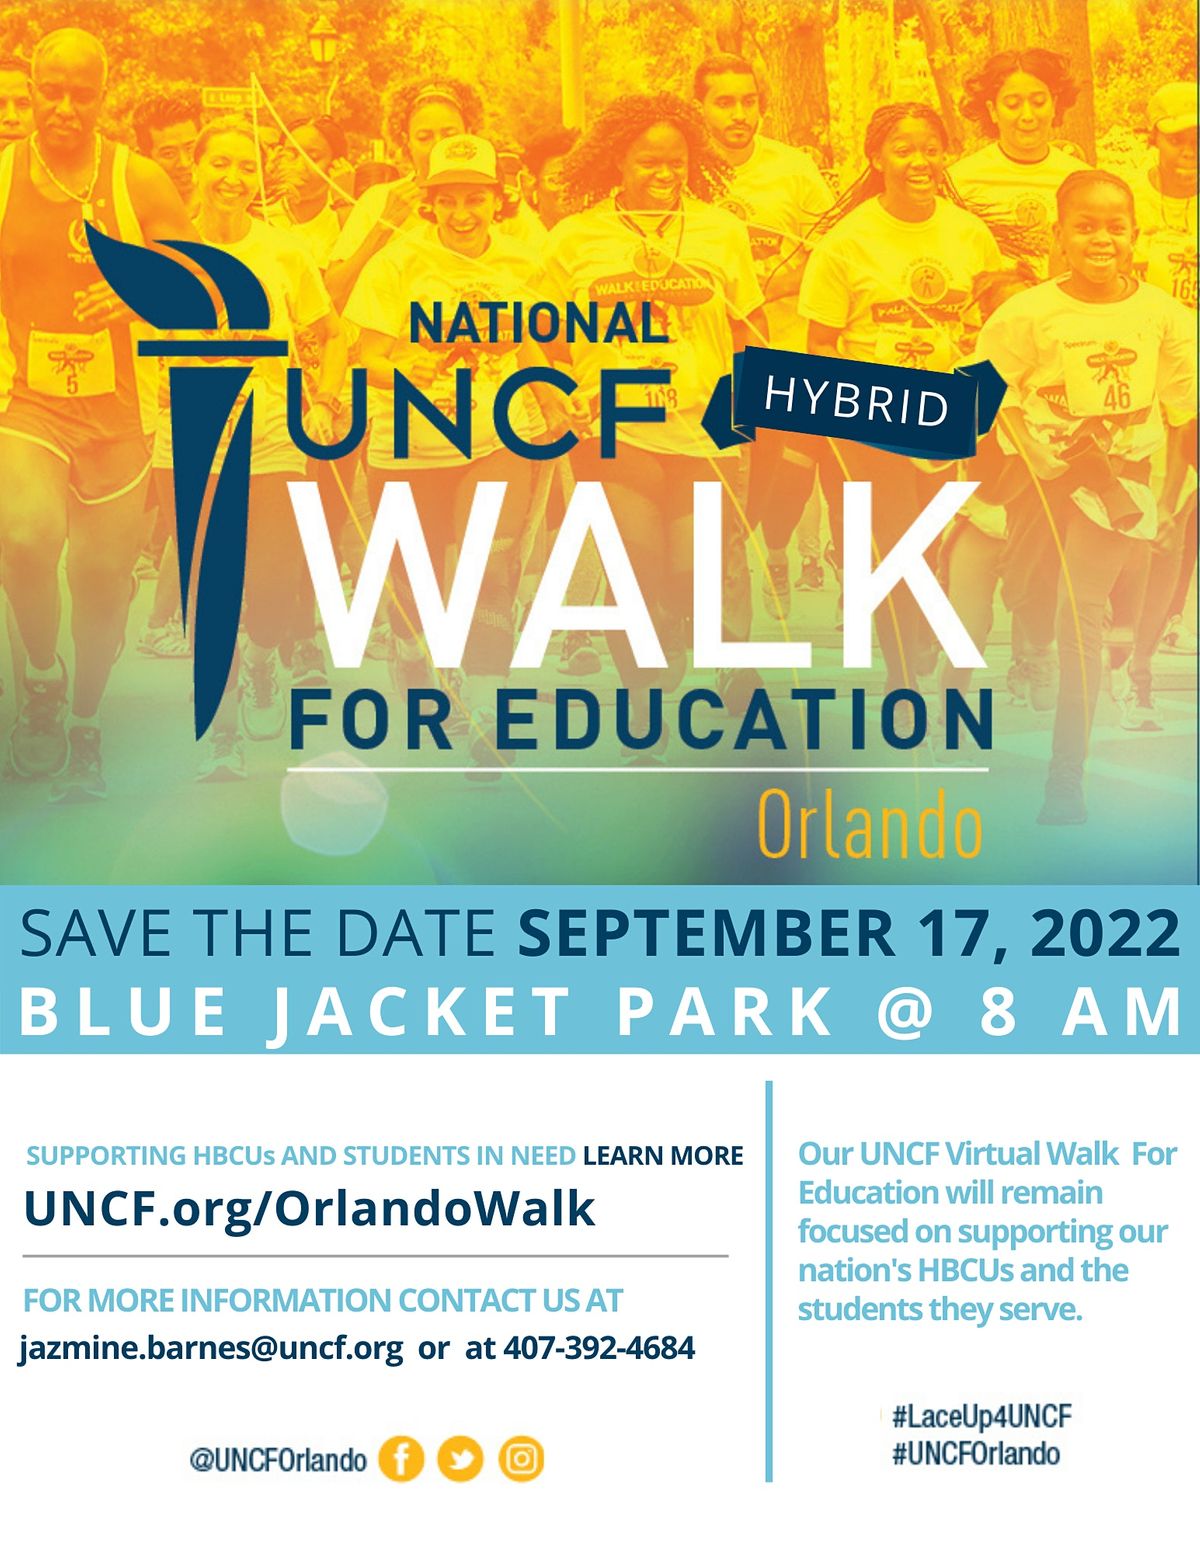 UNCF 2022 Central Florida 5K Walk for Education